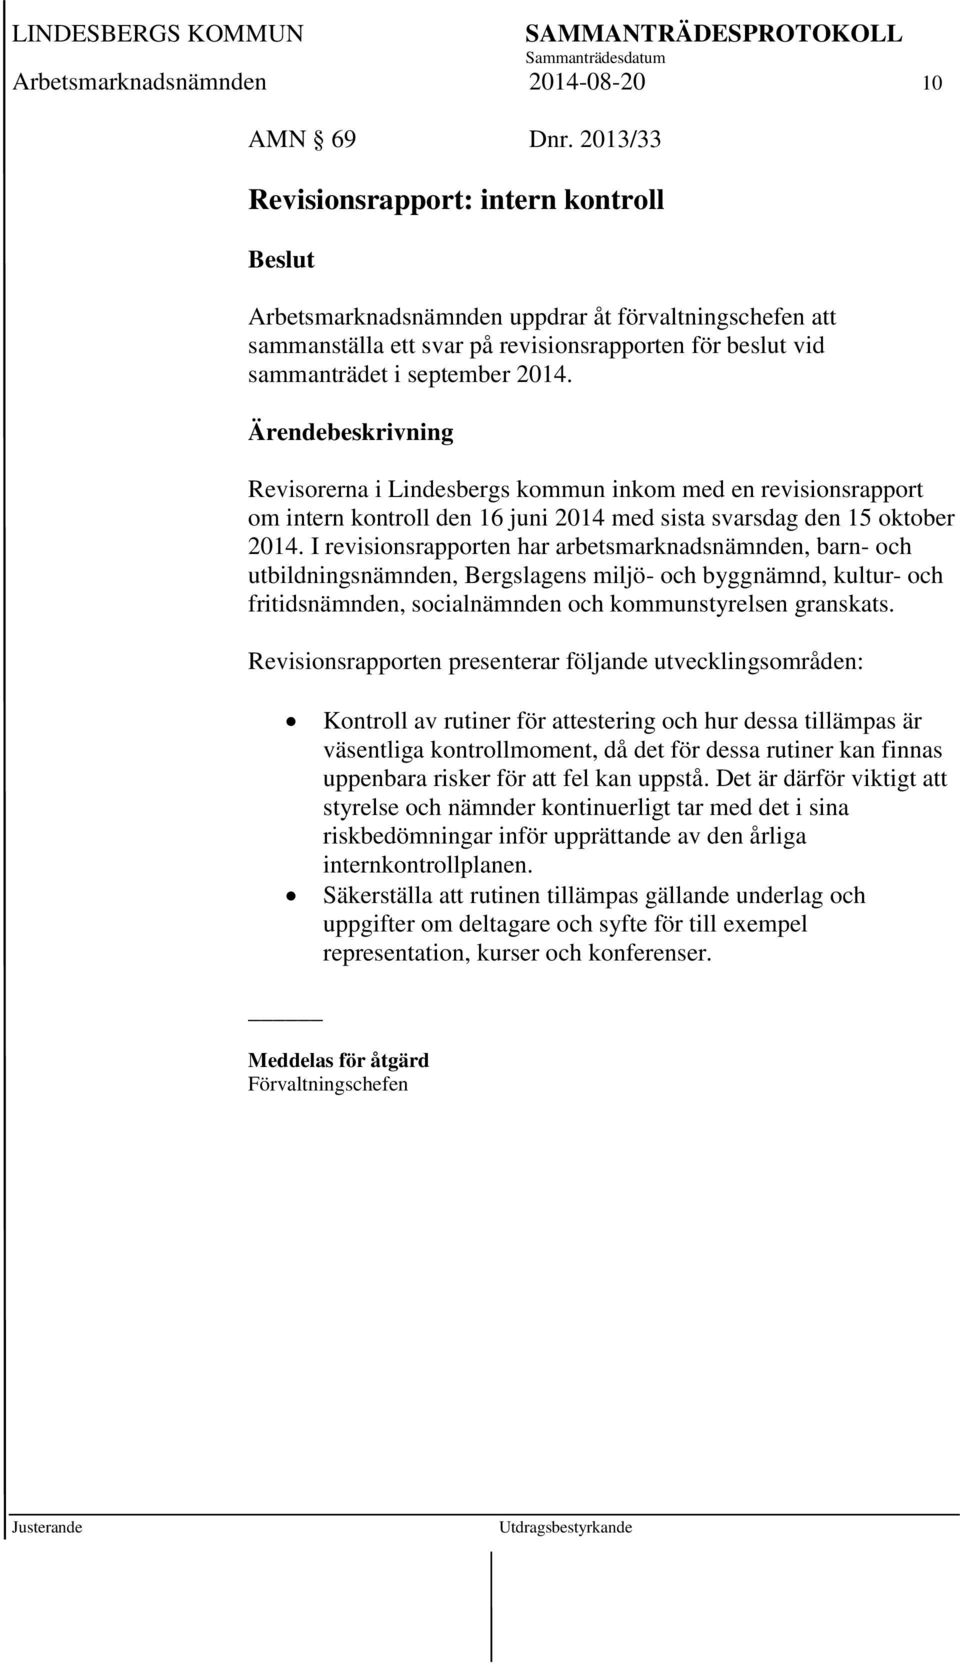 Revisorerna i Lindesbergs kommun inkom med en revisionsrapport om intern kontroll den 16 juni 2014 med sista svarsdag den 15 oktober 2014.